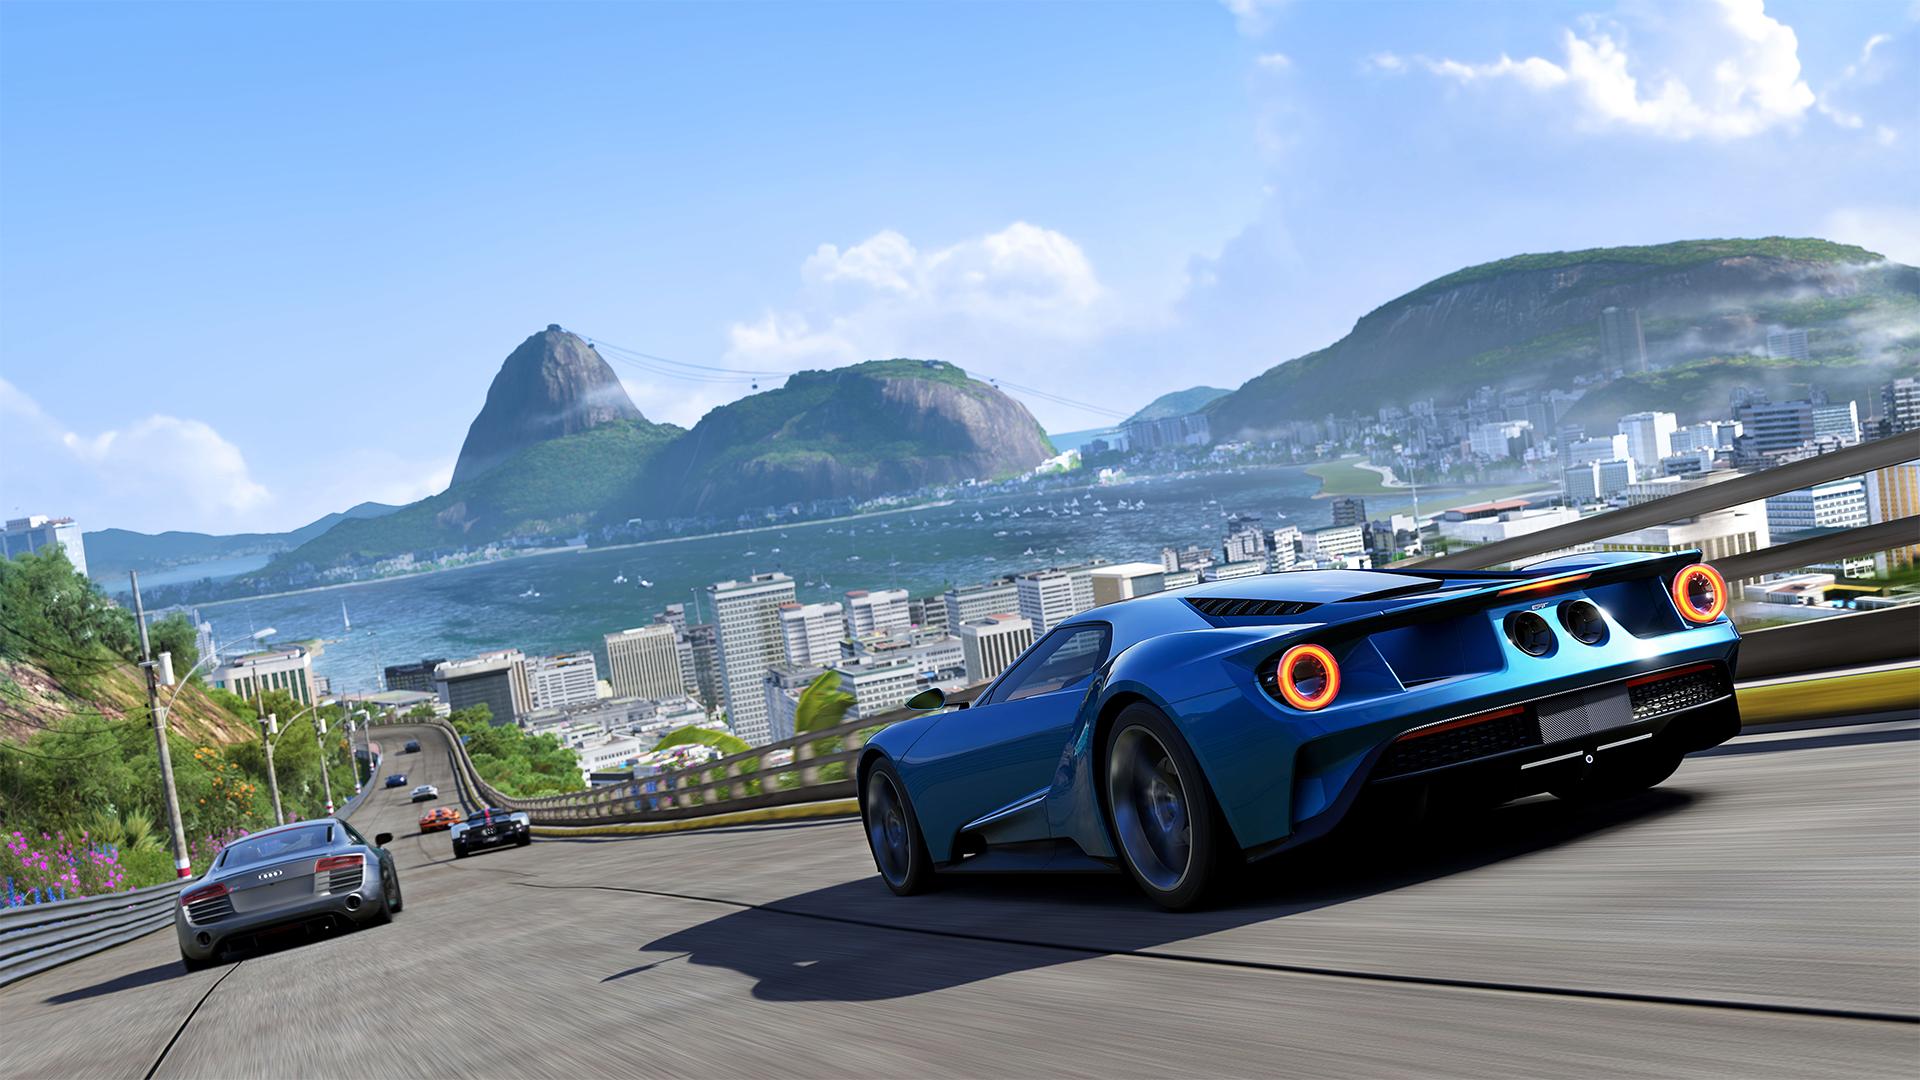 Turn 10 Studios publikuje zwiastun toru Suzuka w grze Forza Motorsport